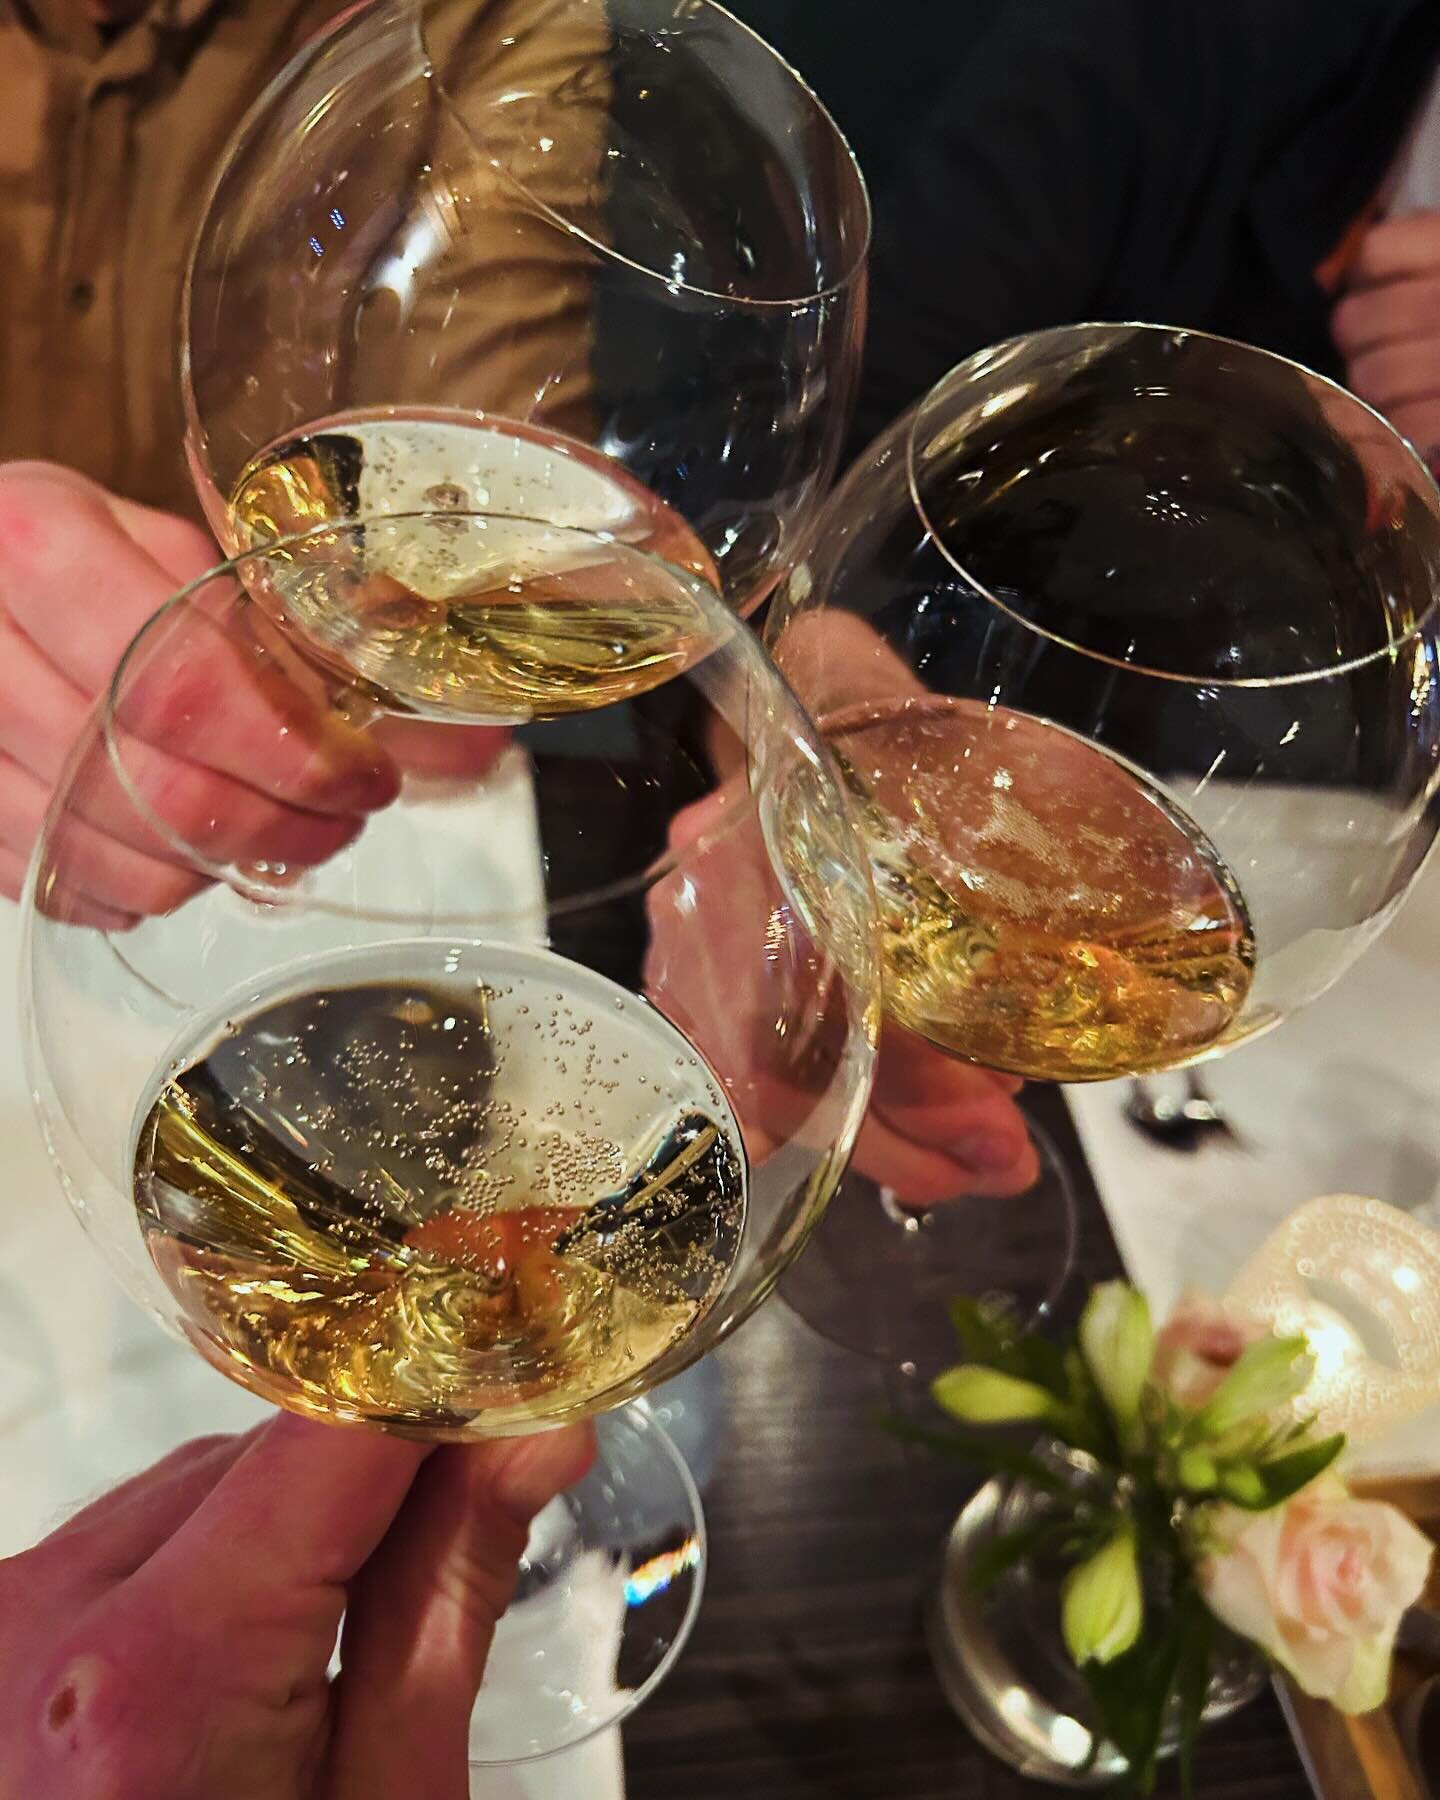 Gisteren hebben Ruud, Martijn en Joris geproost op het 1-jarig bestaan van Bar Wijnig. Wat is dat jaar voorbij gevlogen! 

@marieke_vx bedankt voor de heerlijke avond in @restaurantlevinx 🍷

Op nog vele mooie jaren 🥂

#wijn 
#wijnbar 
#barwijnig 
#